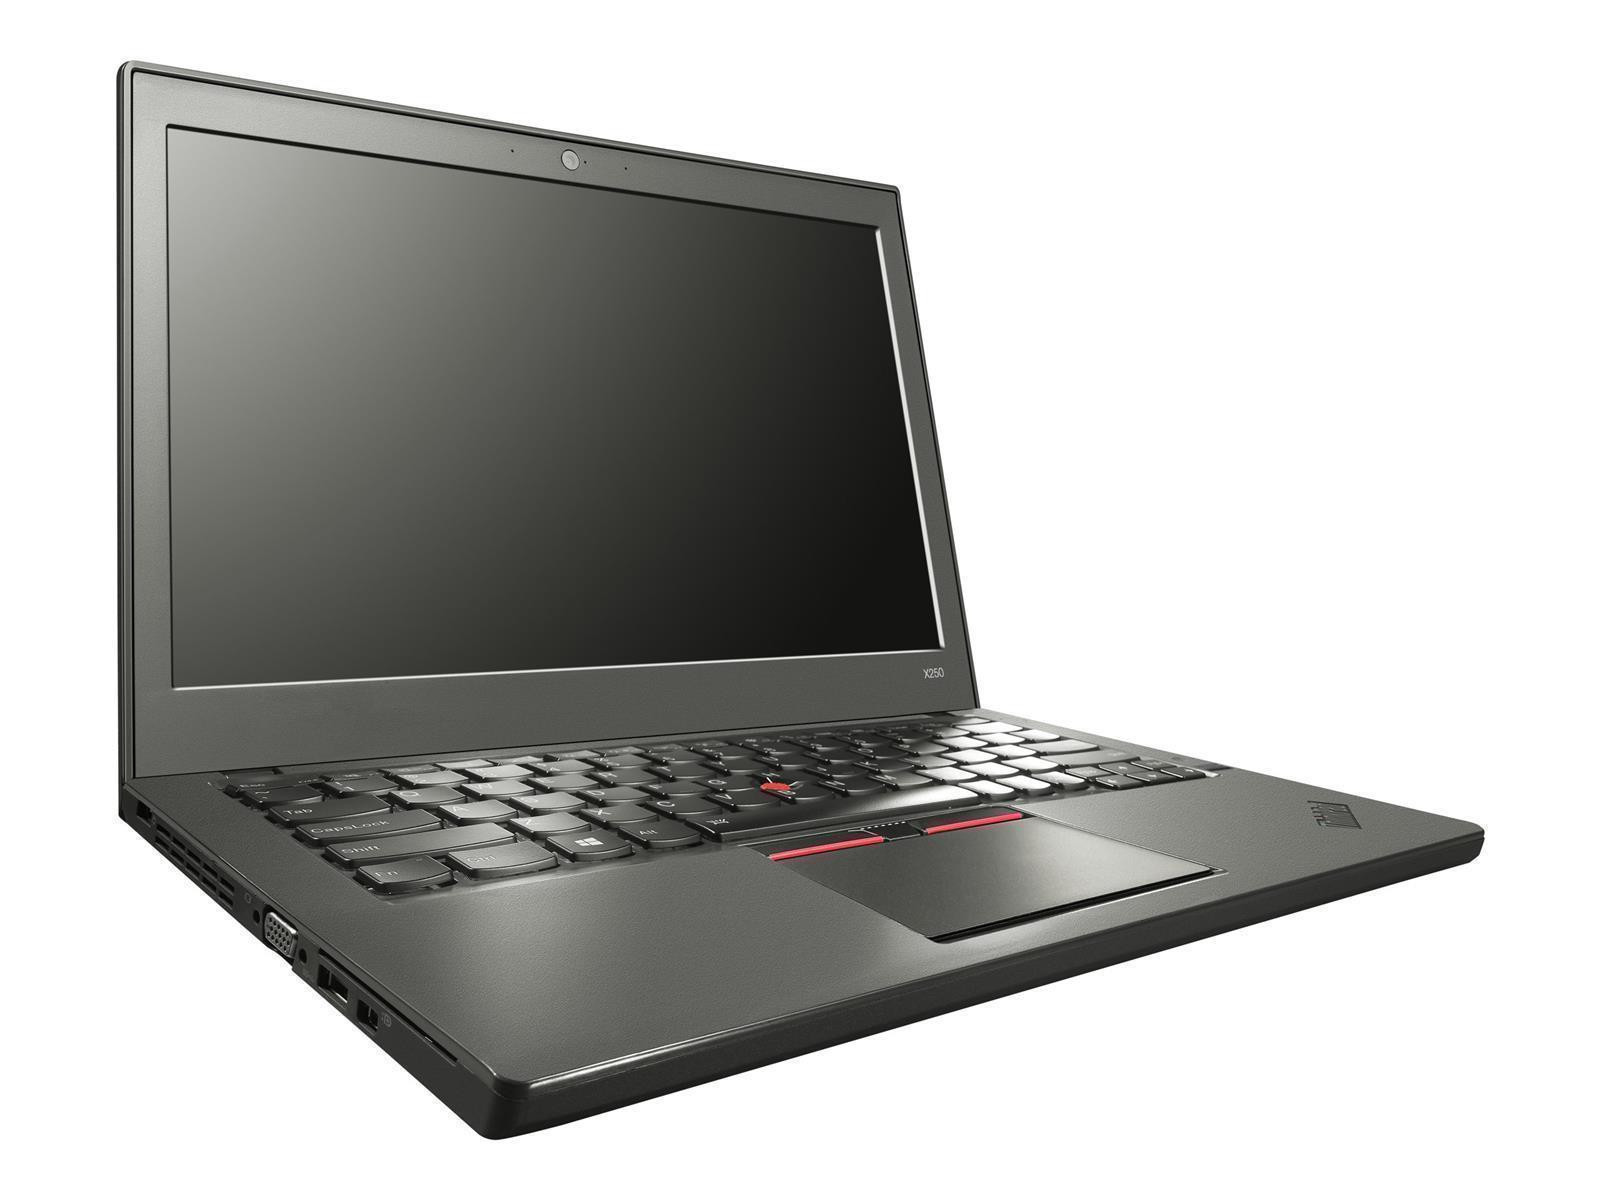 Lenovo ThinkPad X250 Laptop Intel Core i5-5300U 8GB RAM 500GB HDD WWAN Win 10 Pro QWERTY